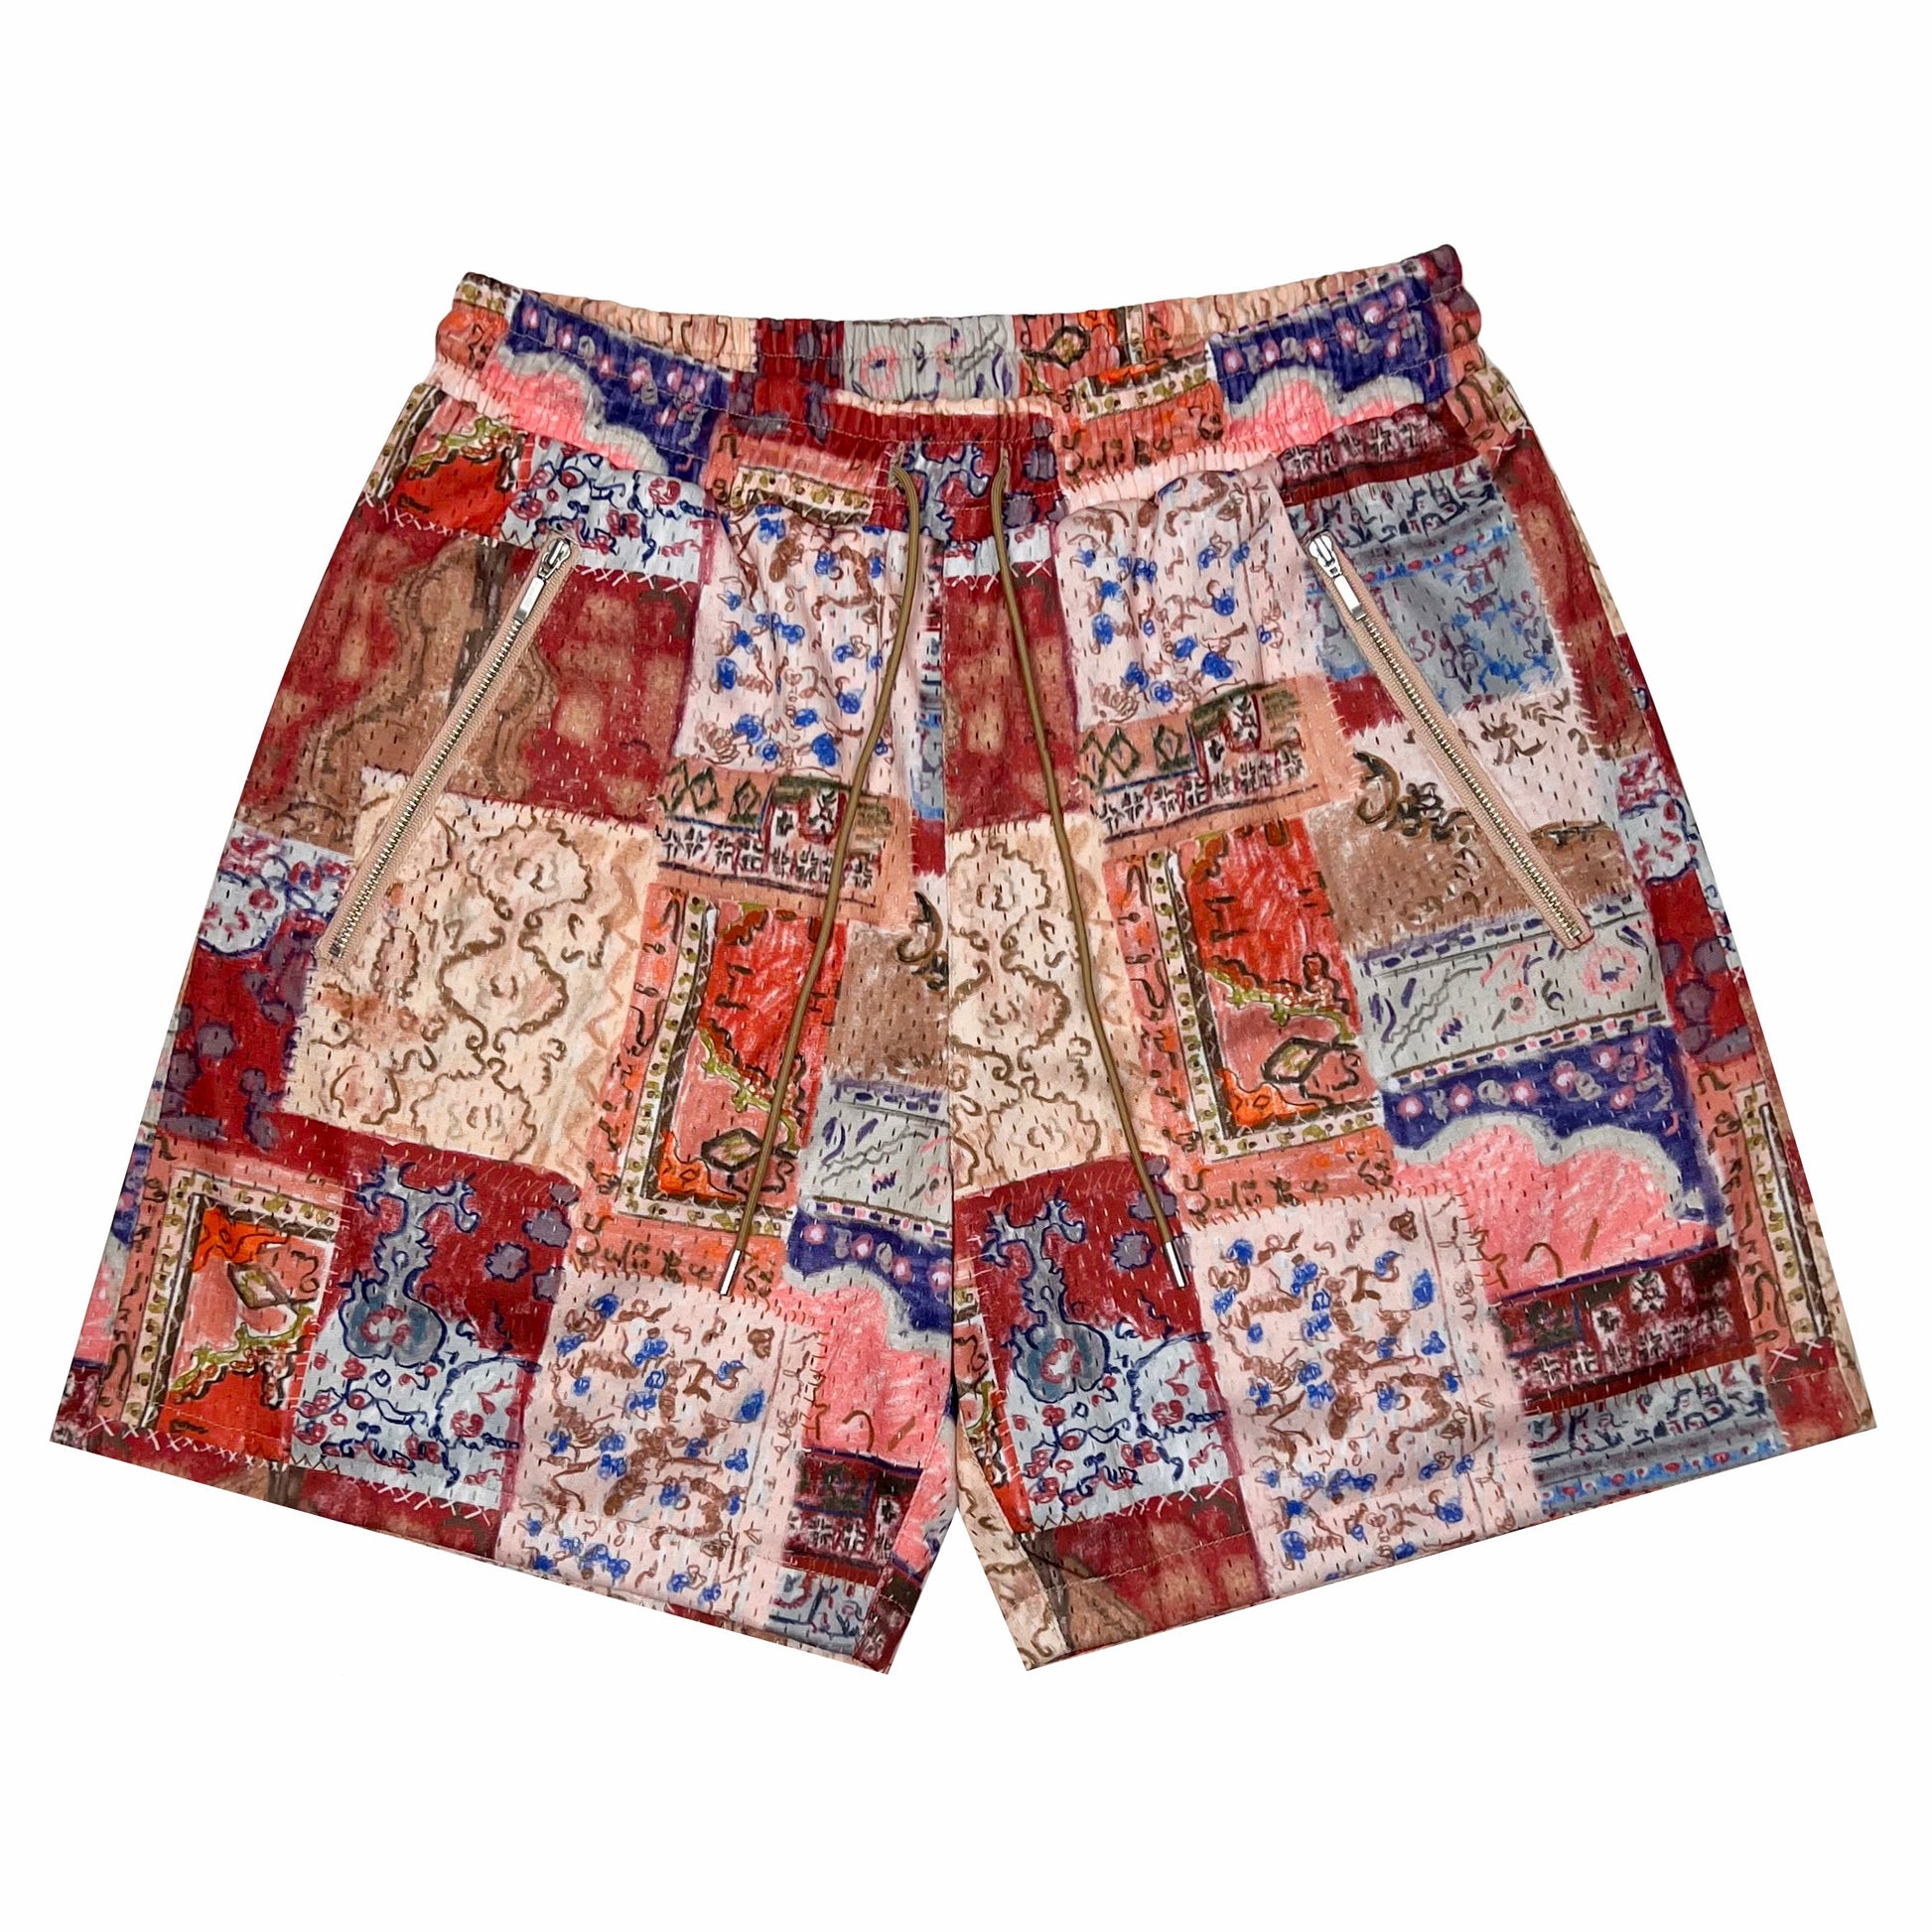 BLEDLA-BLED-Persian Rug Shorts-Persian Shorts-Mens Mesh Shorts-Crayon Shorts-Streetwear Shorts-Luxury Shorts-Iranian Clothing-Persian Carpet Shorts